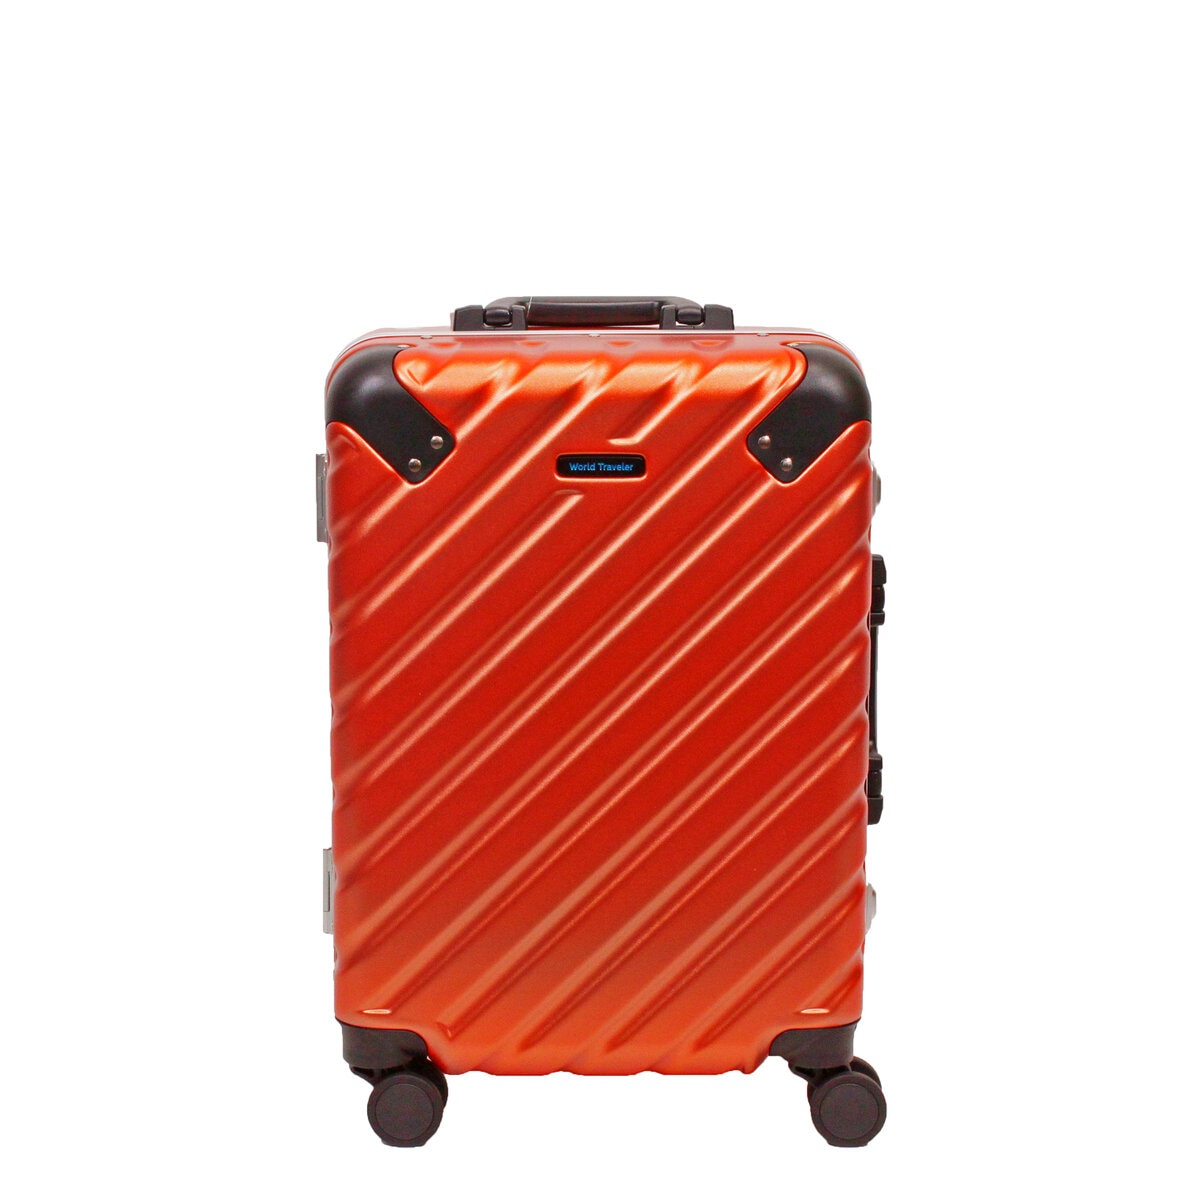 ACE ワールドトラベラー エラコール スーツケース 機内持ち込みサイズ  32L  0409614  オレンジ